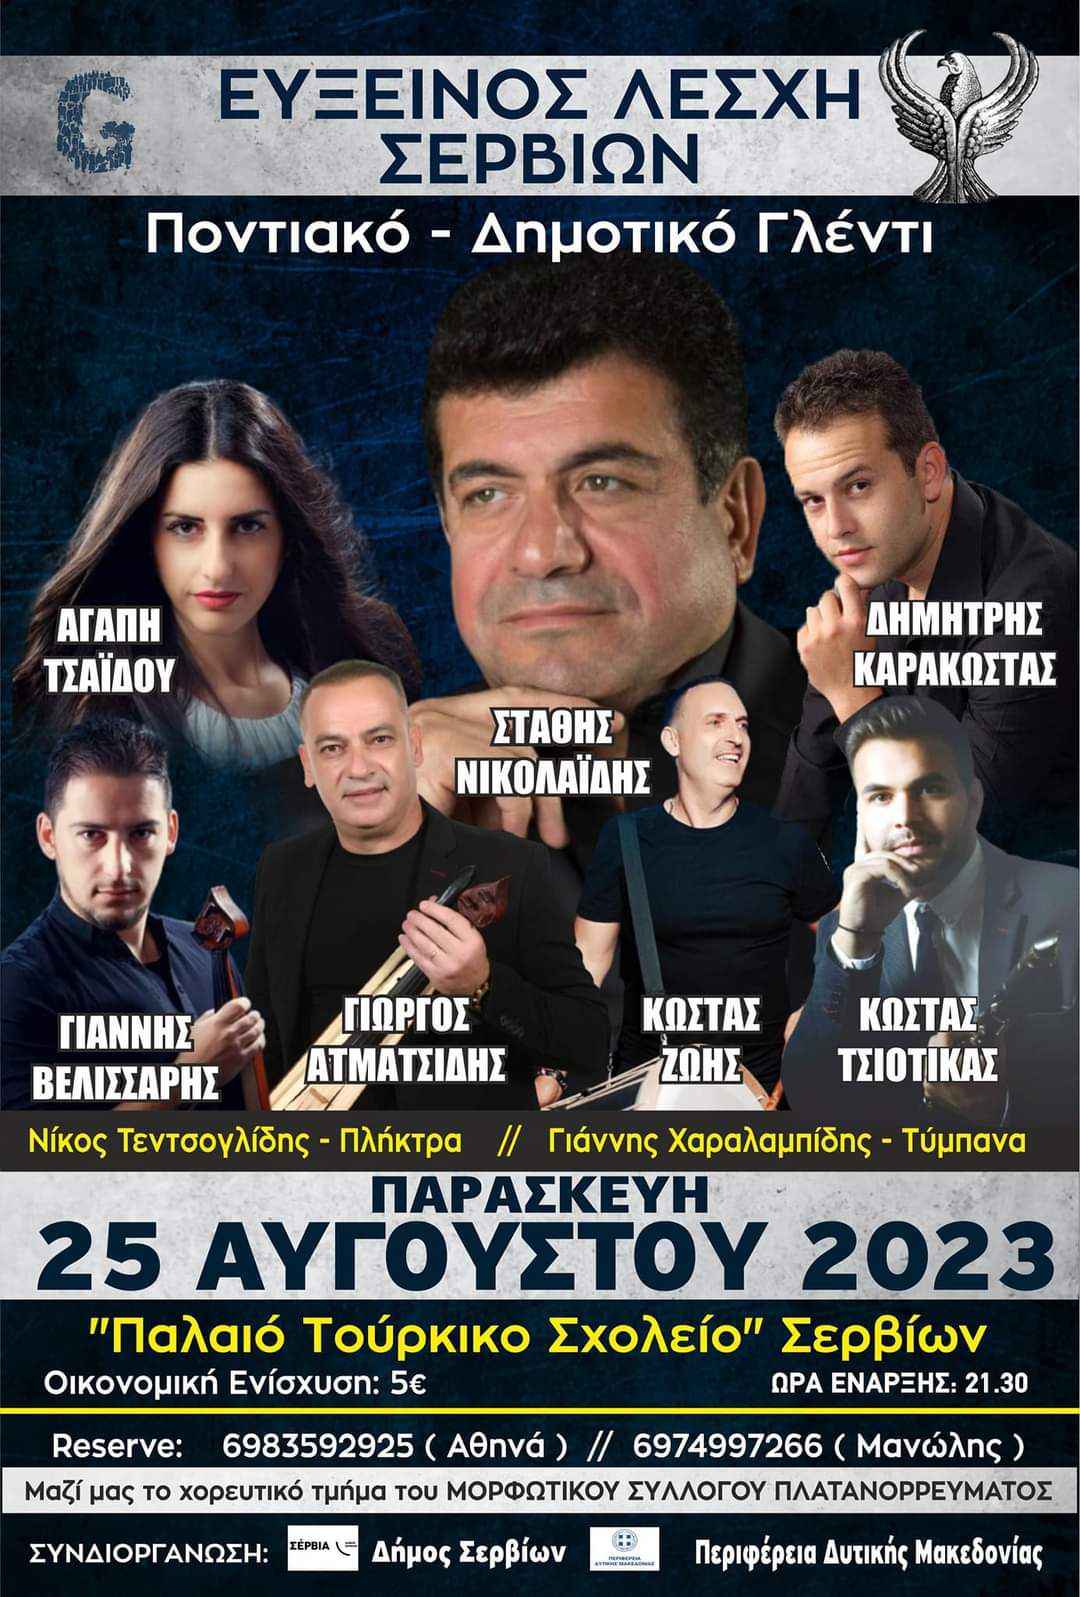 Εύξεινος Λέσχη Σερβίων: Παρασκευή 25 Αυγούστου 2023 Μεγάλη Ποντιακή βραδιά